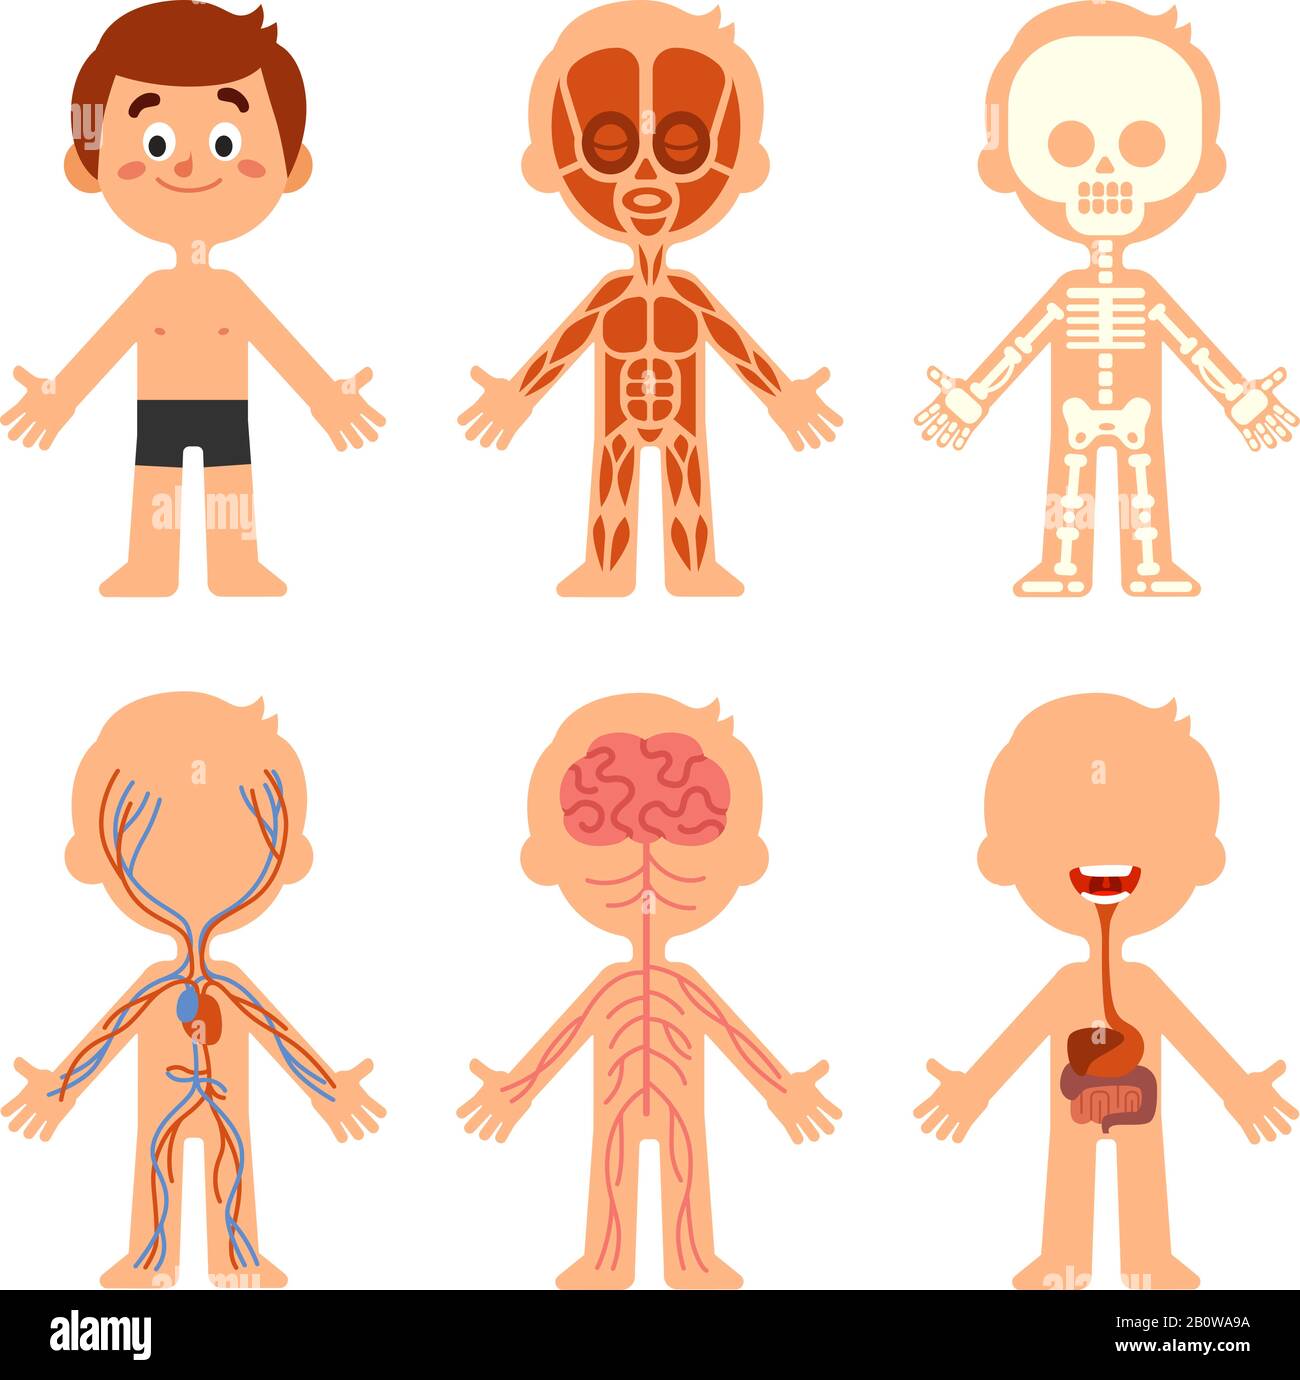 Anatomie du corps de garçon de dessin animé. Tableau anatomique des systèmes de biologie humaine. Squelette, système veineux et illustration vectorielle des organes Illustration de Vecteur